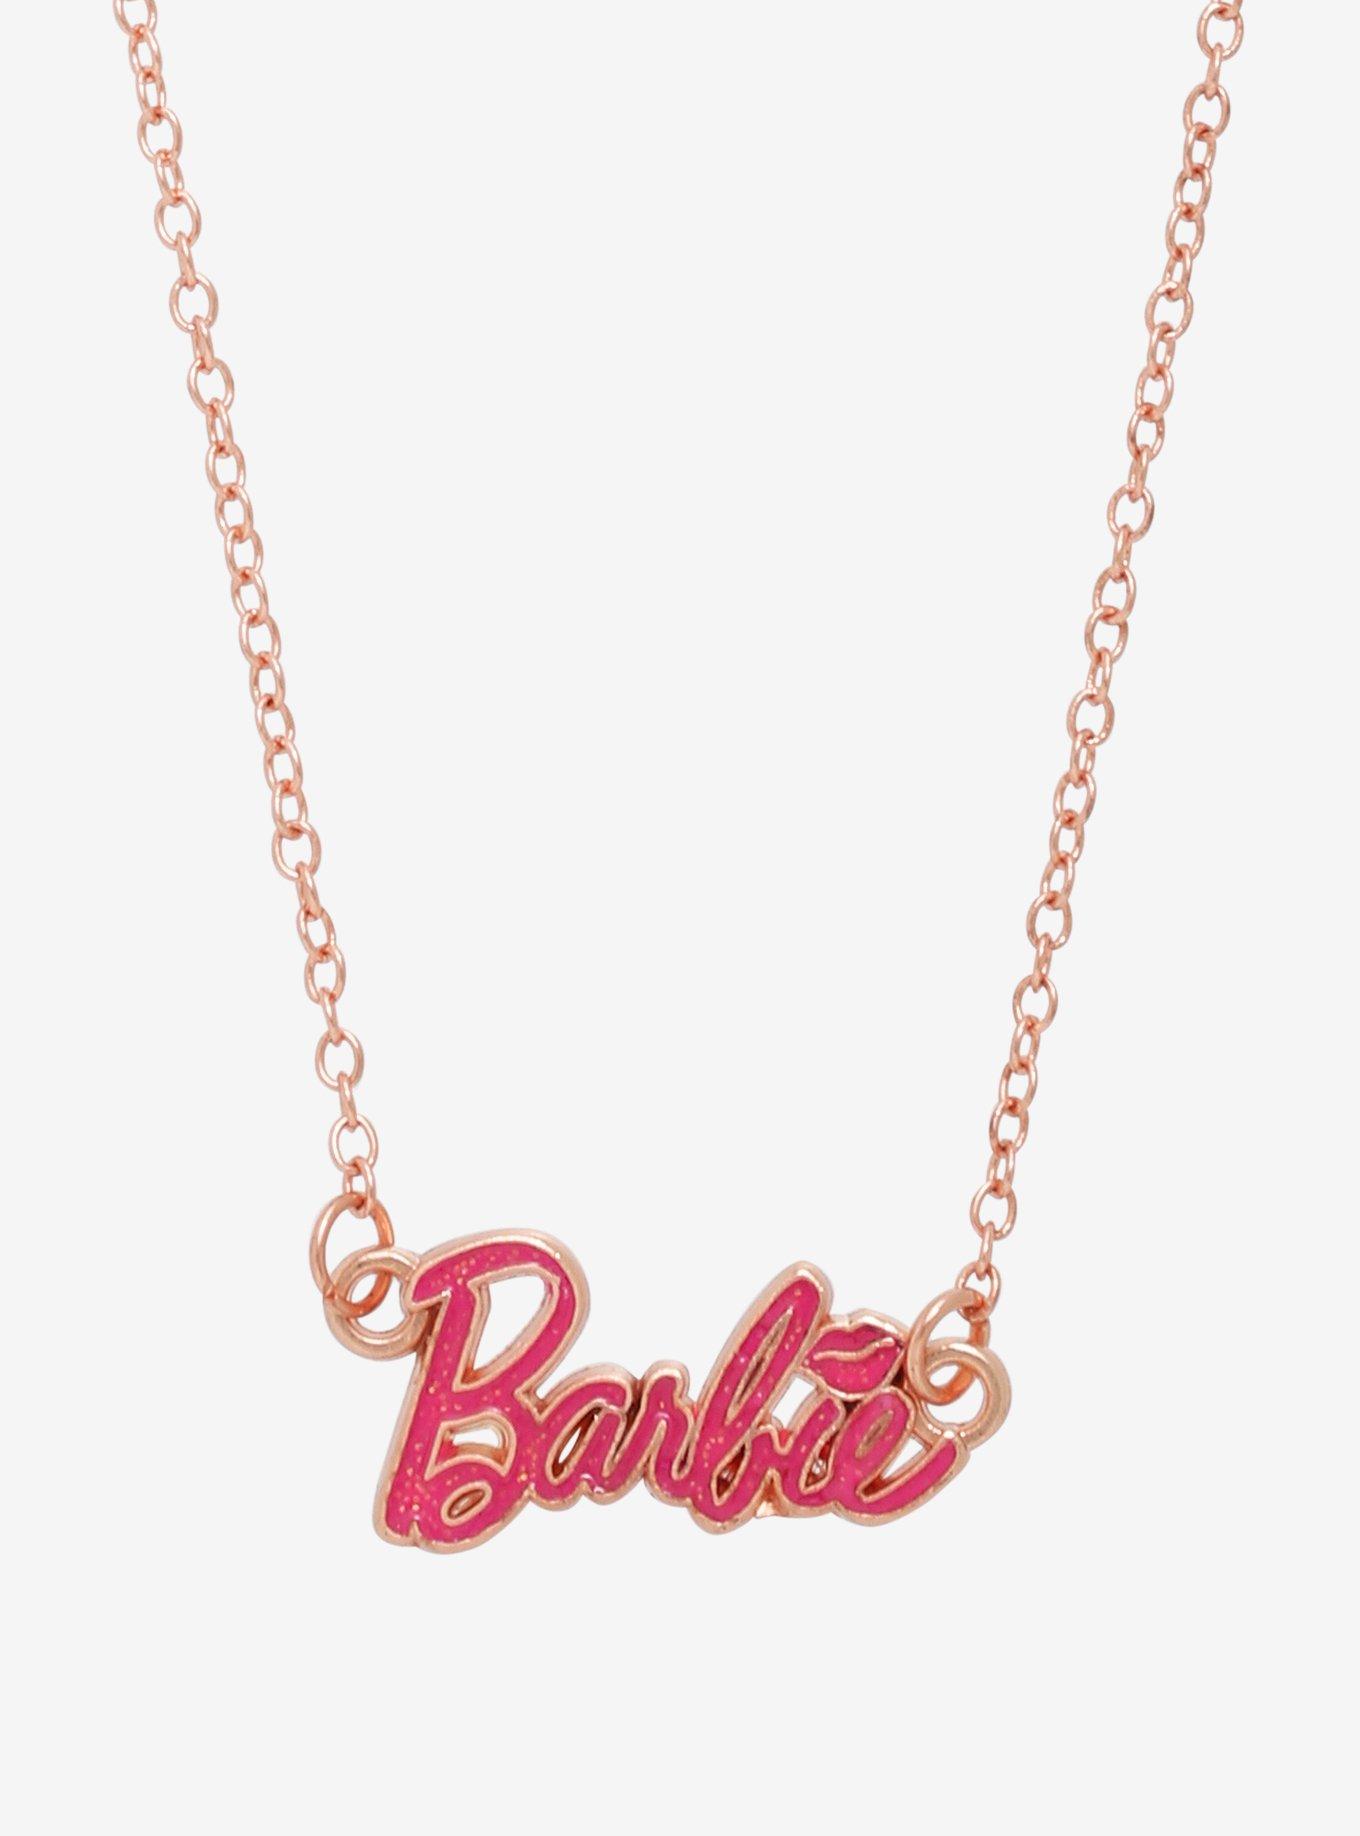 Barbie Necklaces